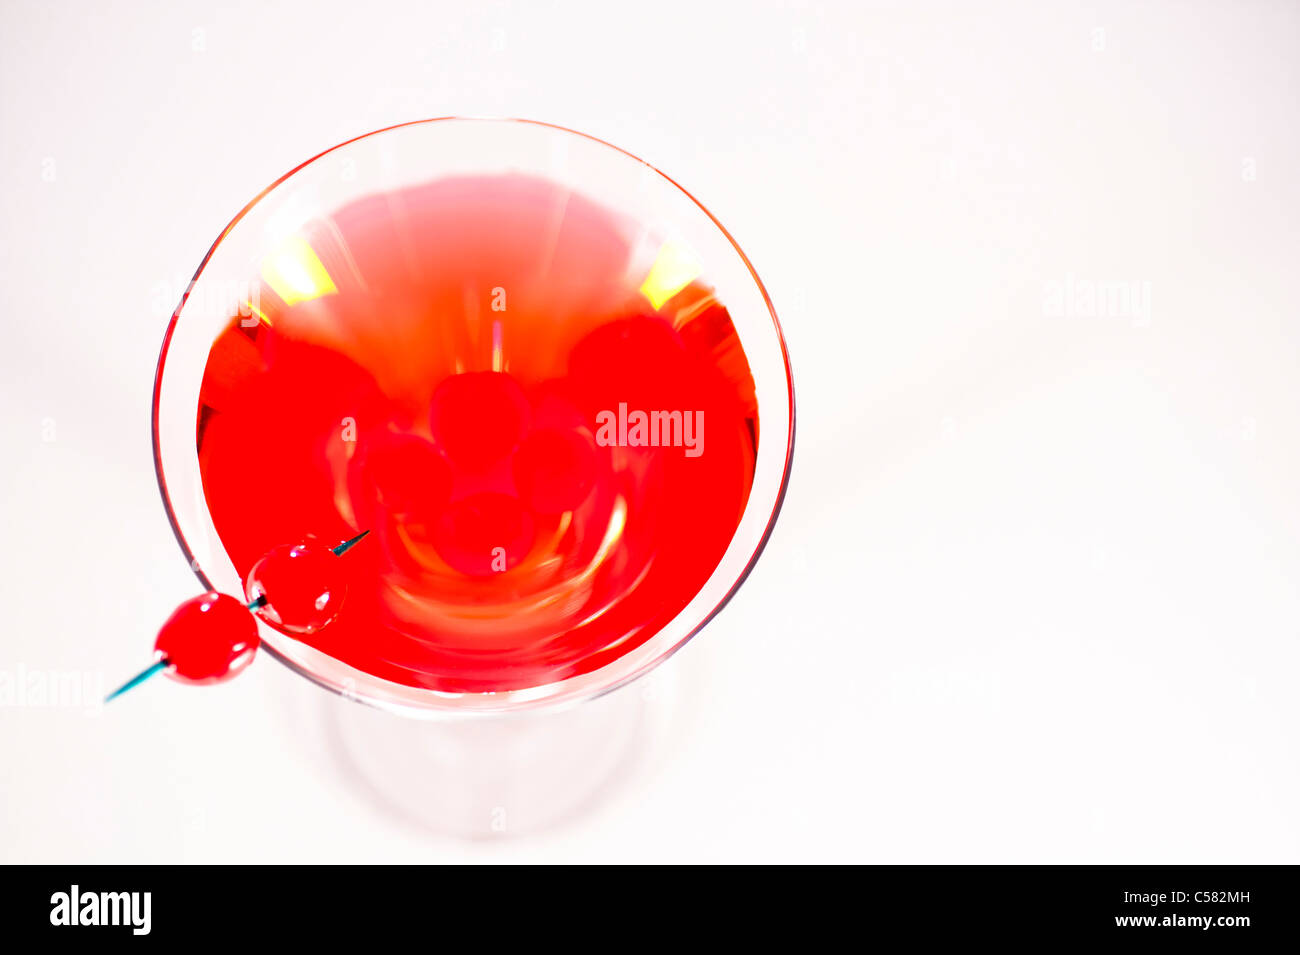 A delicious Cherry Martini. Stock Photo